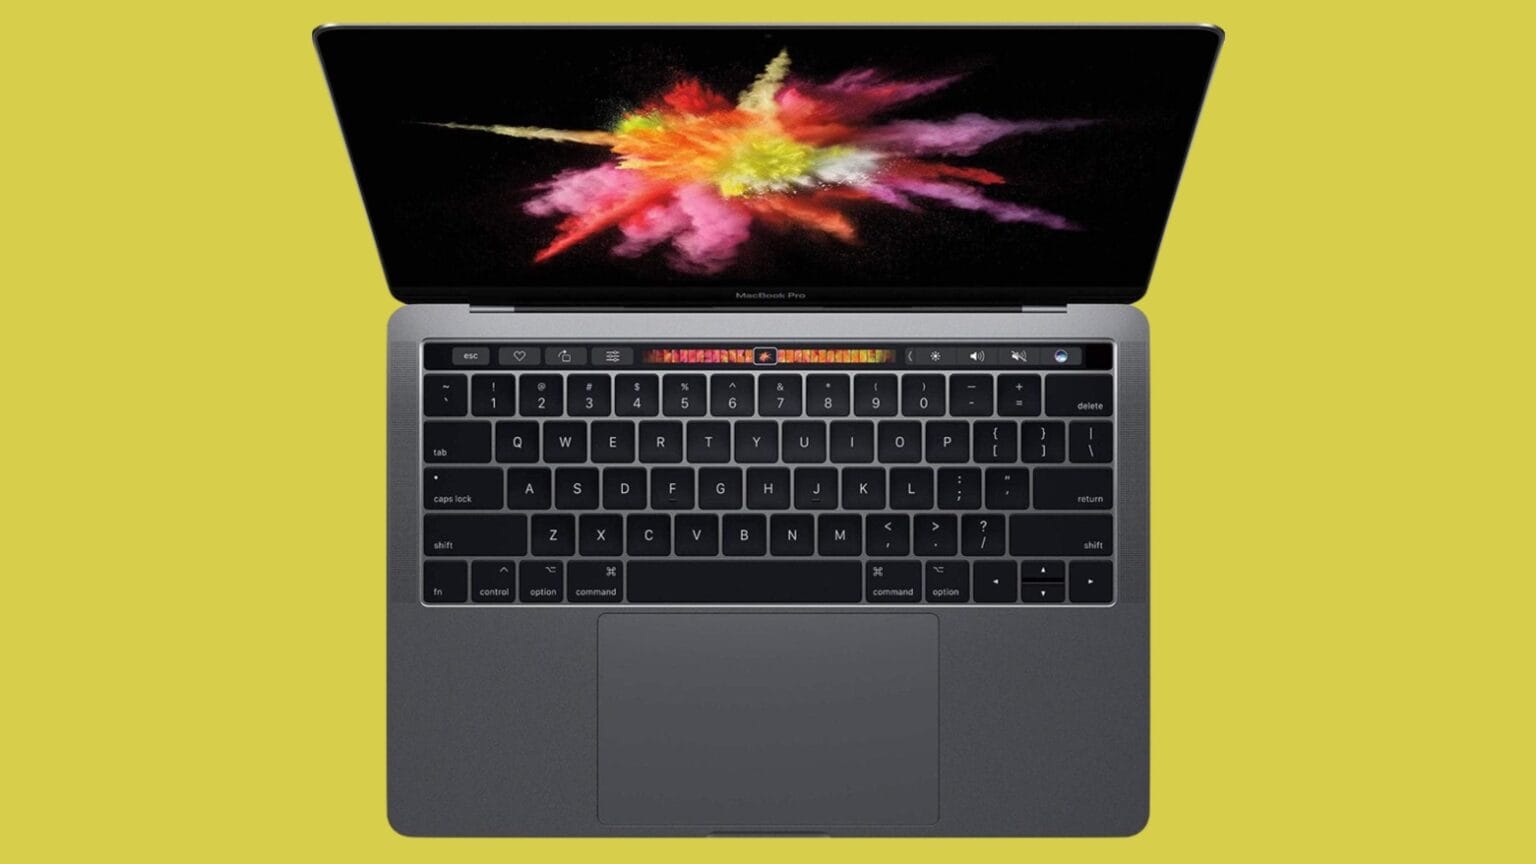 MacBook Pro (15-inch, 2017)